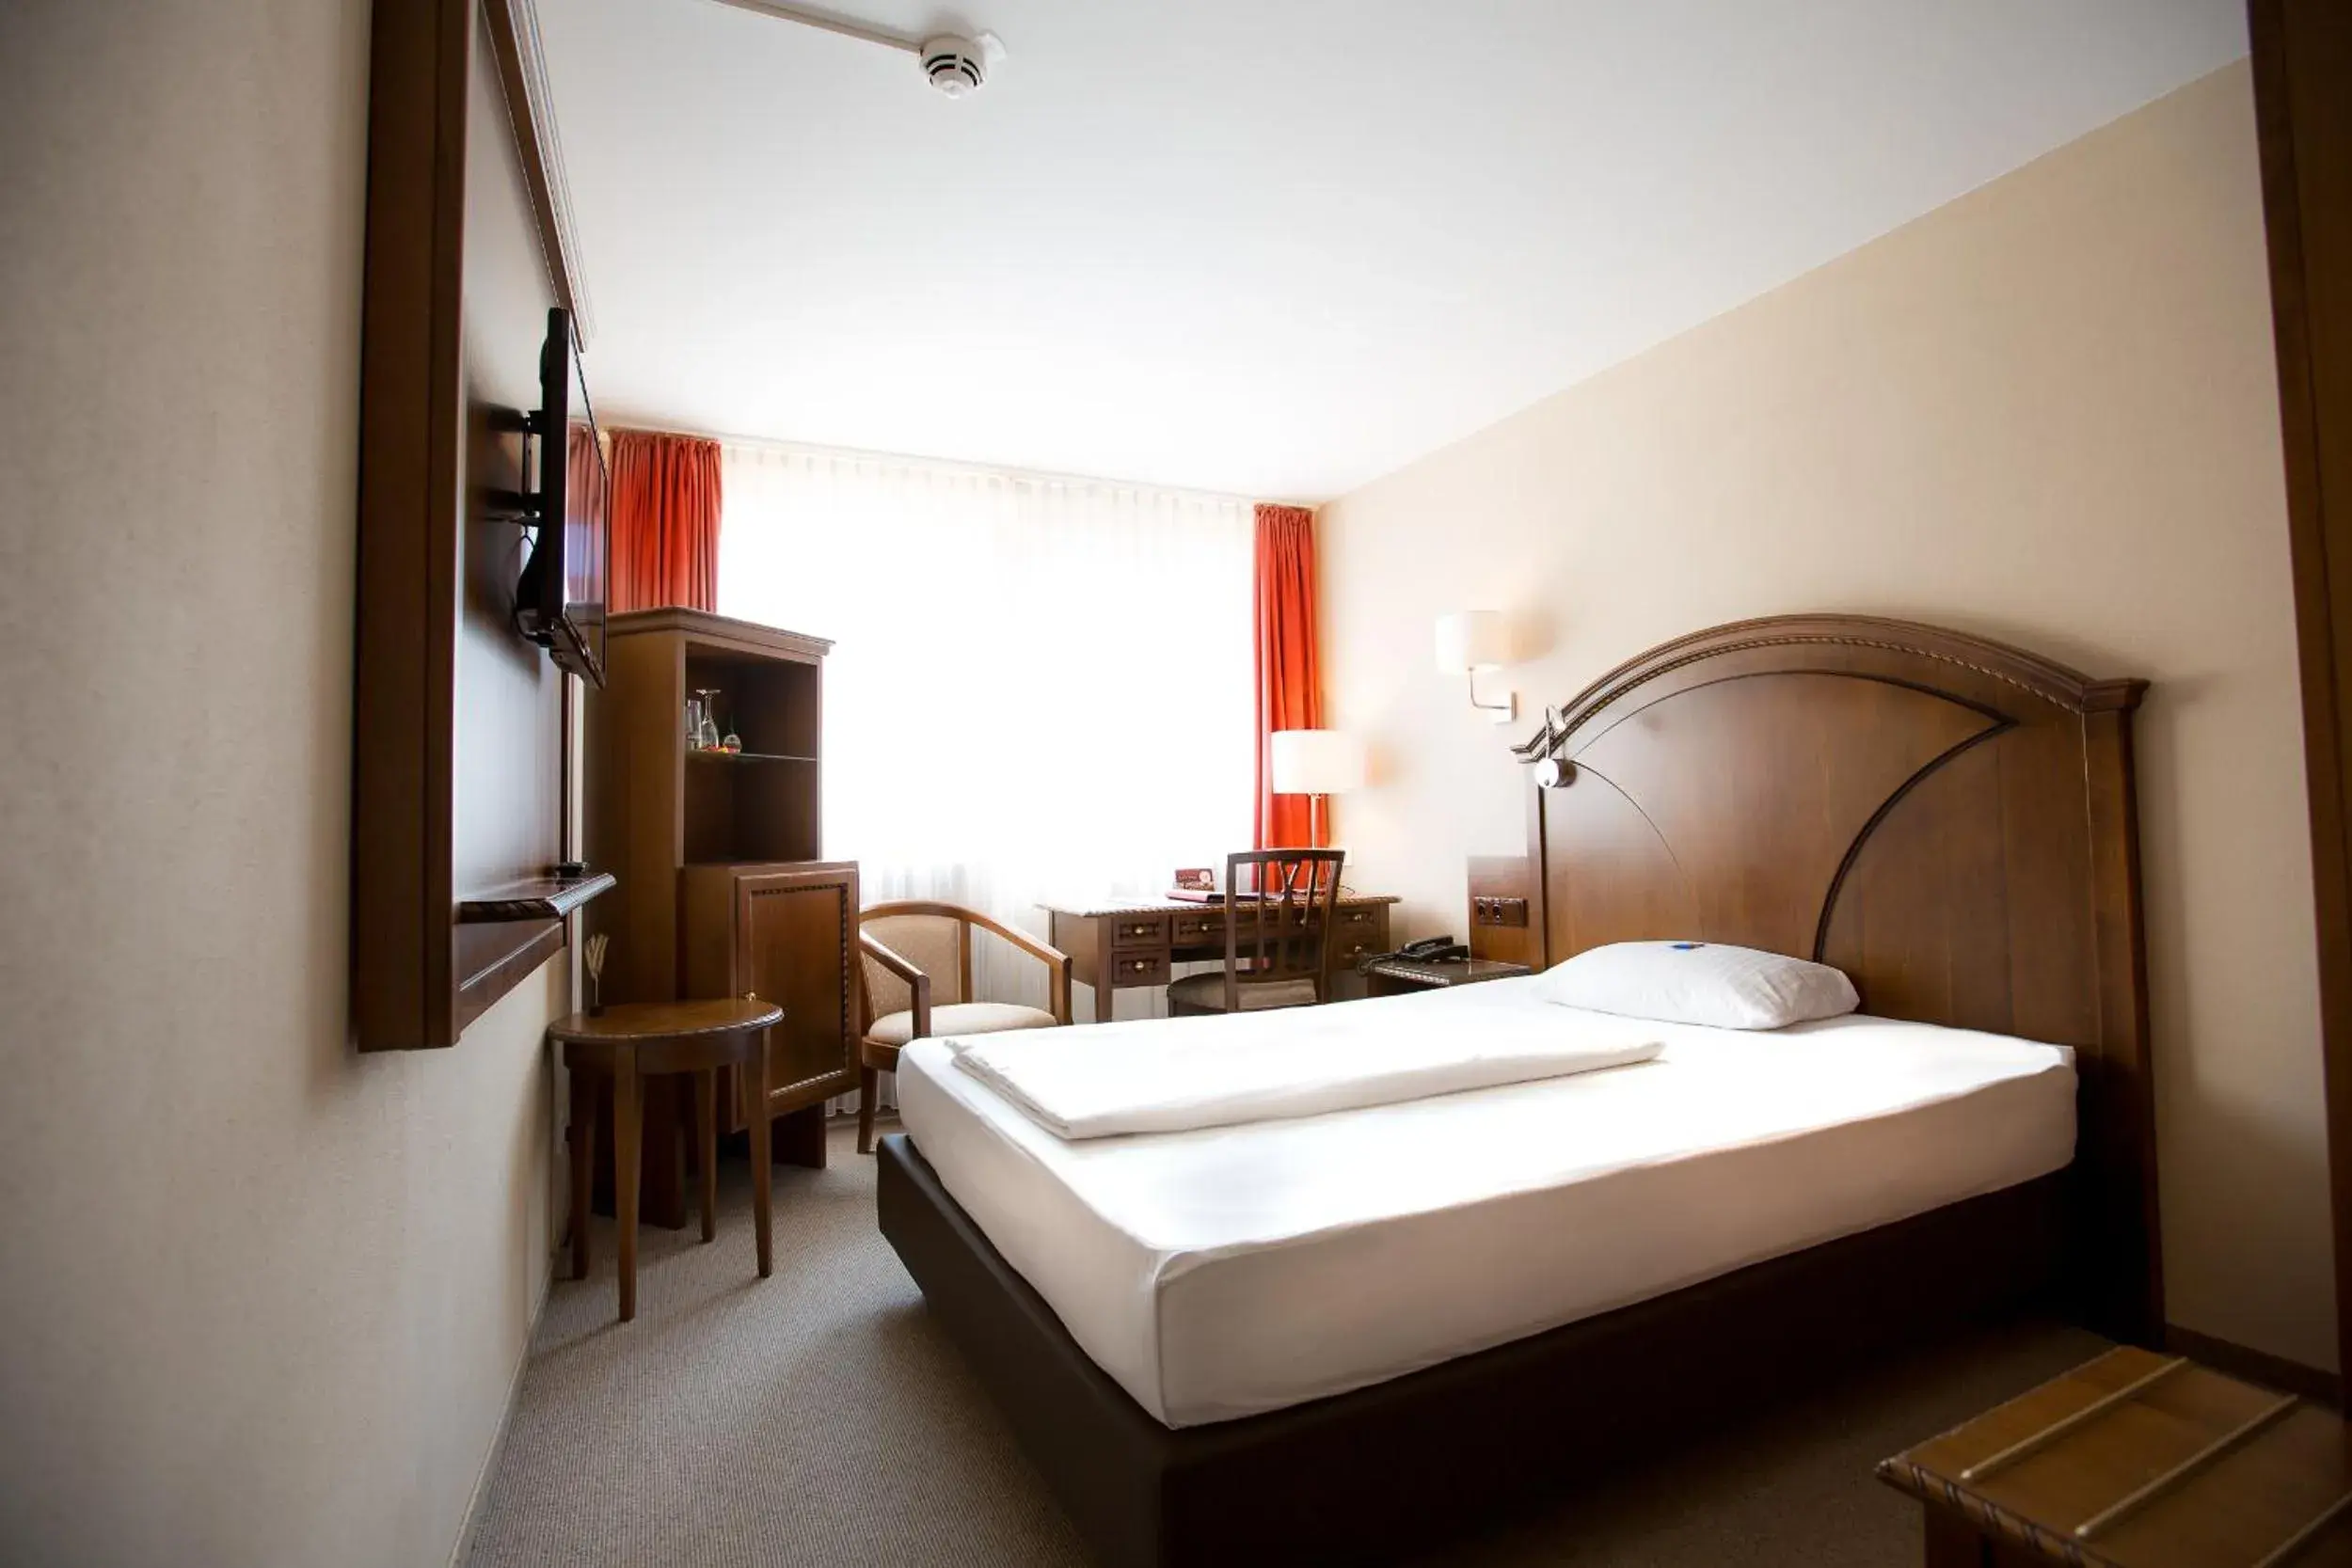 Bed, Room Photo in Burghotel Nürnberg